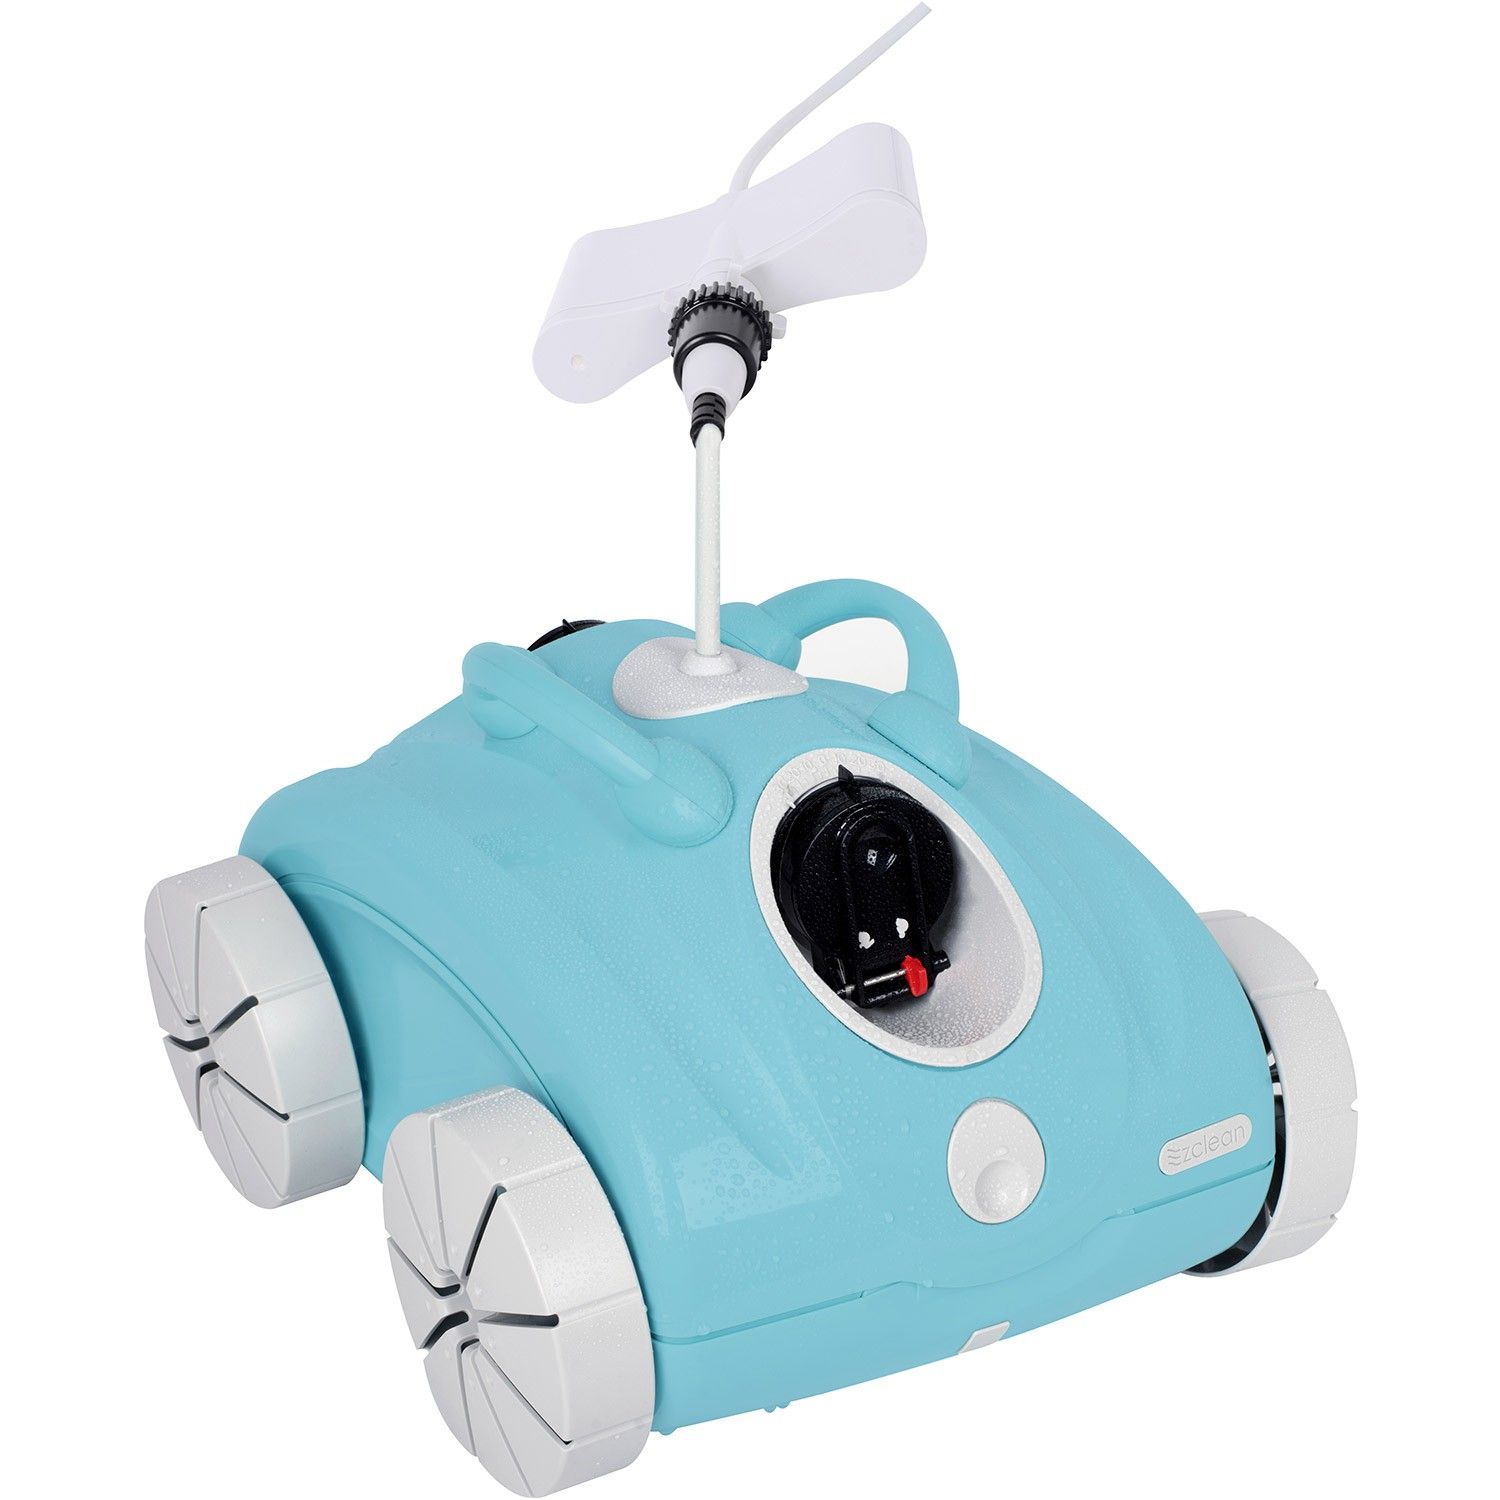  Robot nettoyeur électrique pour piscine Clean & Go